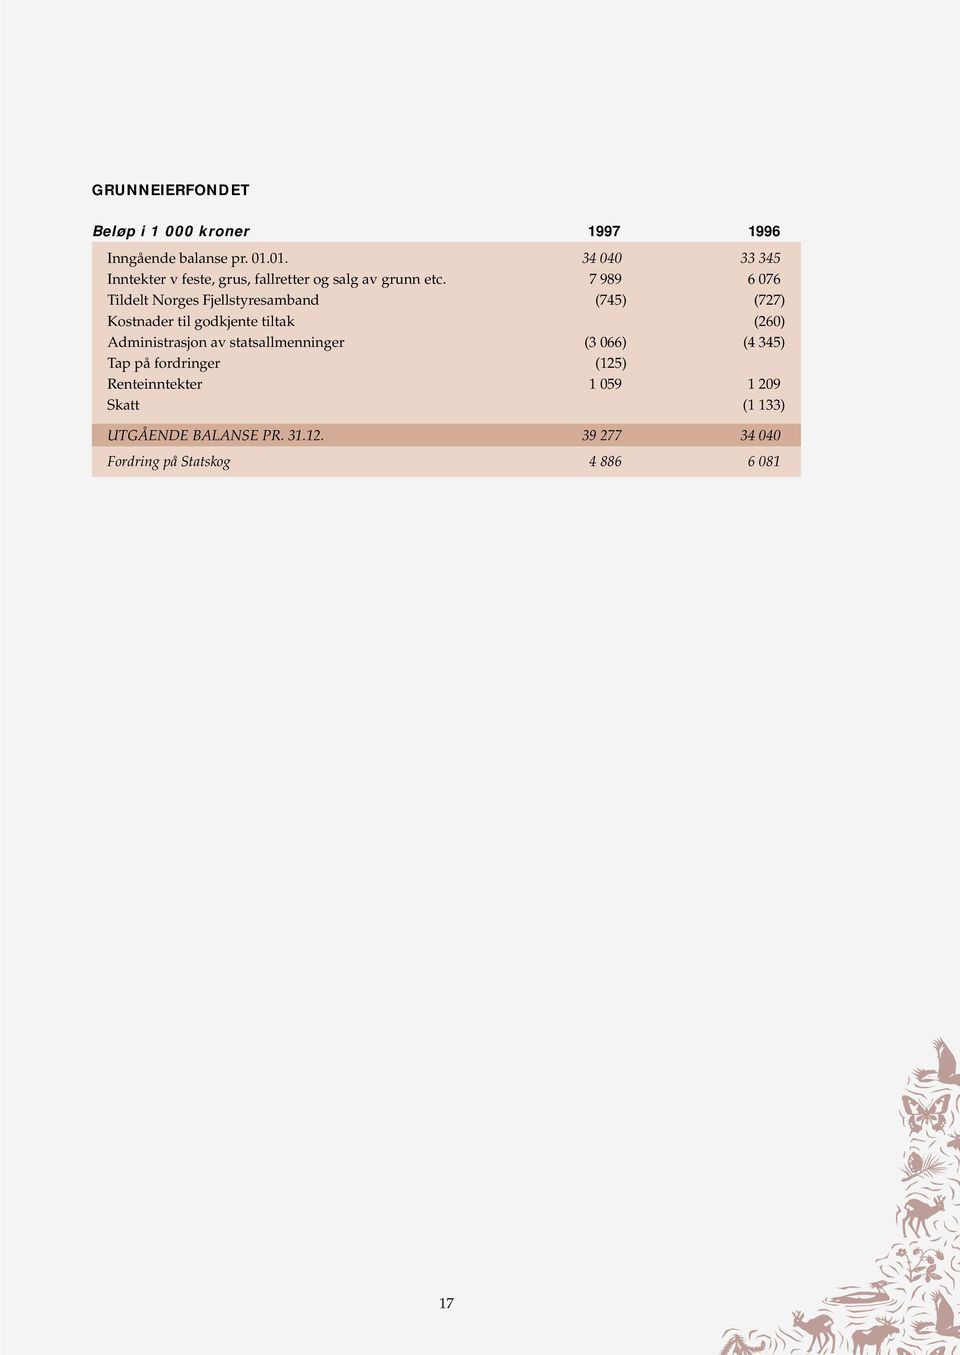 7 989 6 076 Tildelt Norges Fjellstyresamband (745) (727) Kostnader til godkjente tiltak (260) Administrasjon